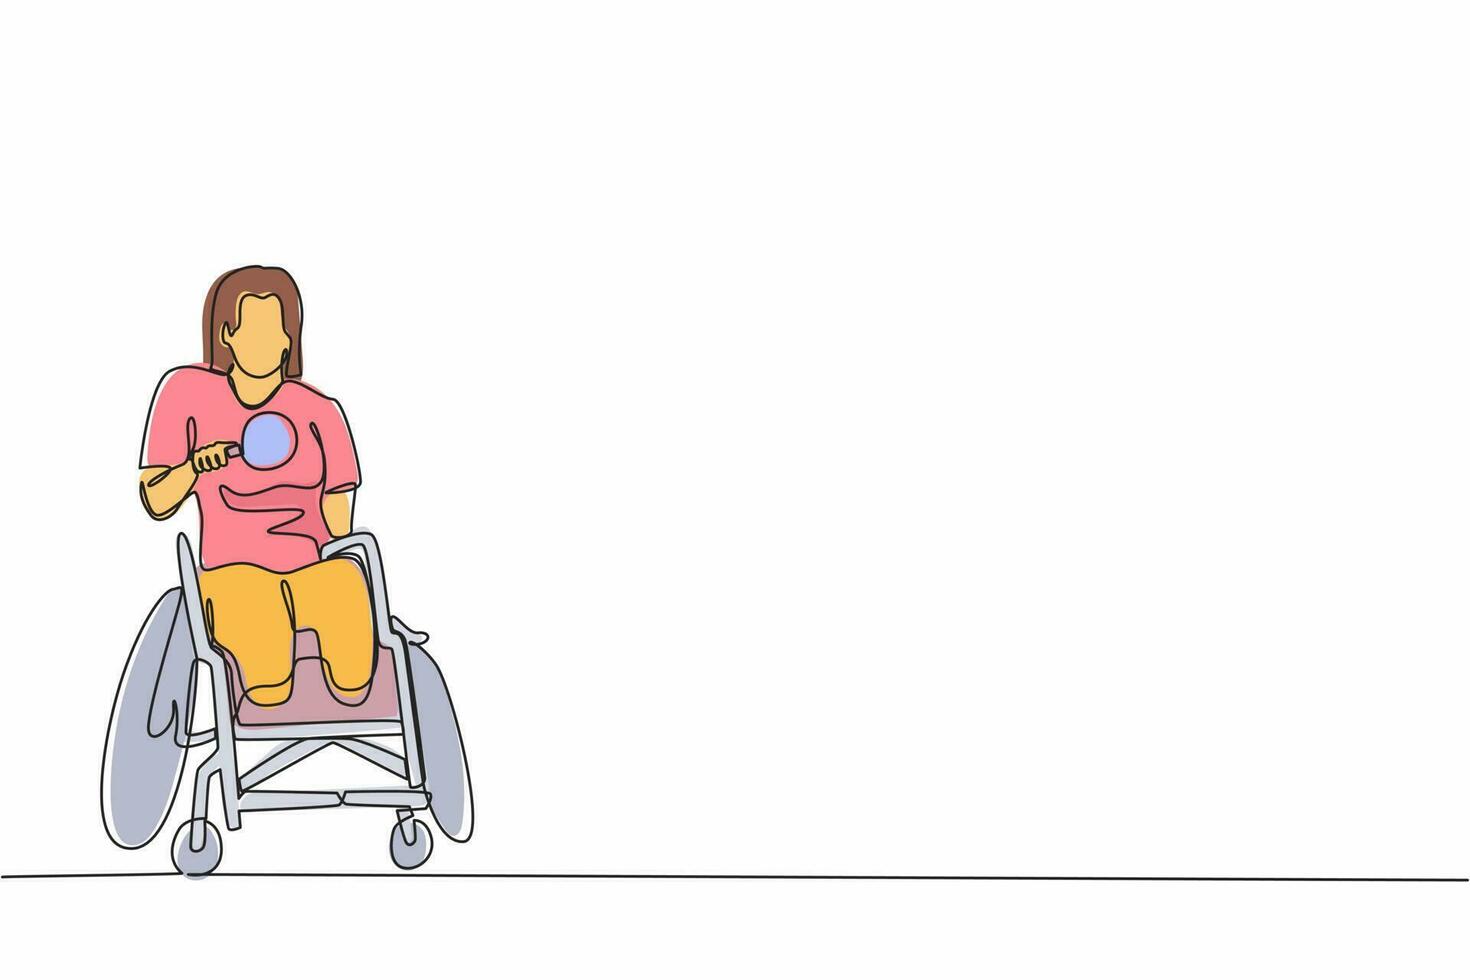 dibujo de una sola línea continua deportista discapacitada en silla de ruedas jugando al tenis de mesa. Campeonato de juegos de discapacidad. aficiones e intereses de las personas con discapacidad. vector de diseño gráfico de una línea